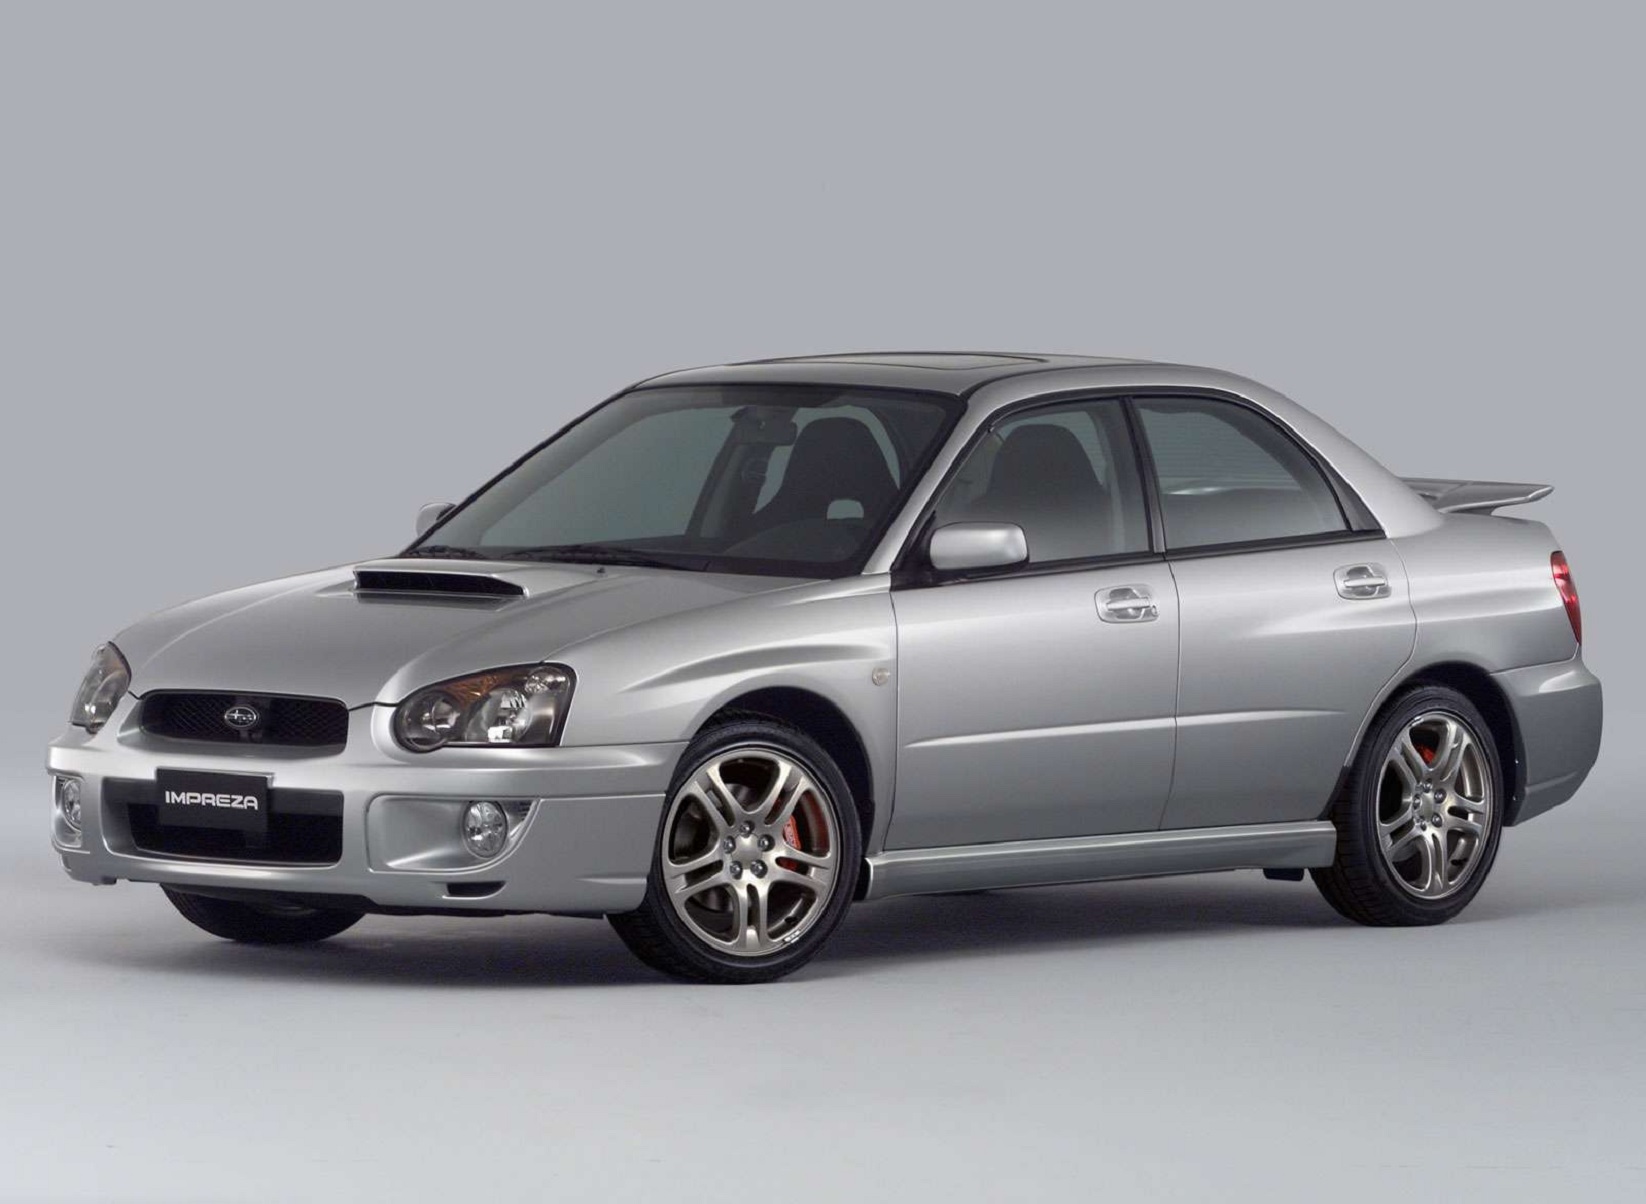 a silver 2004 Subaru Impreza WRX